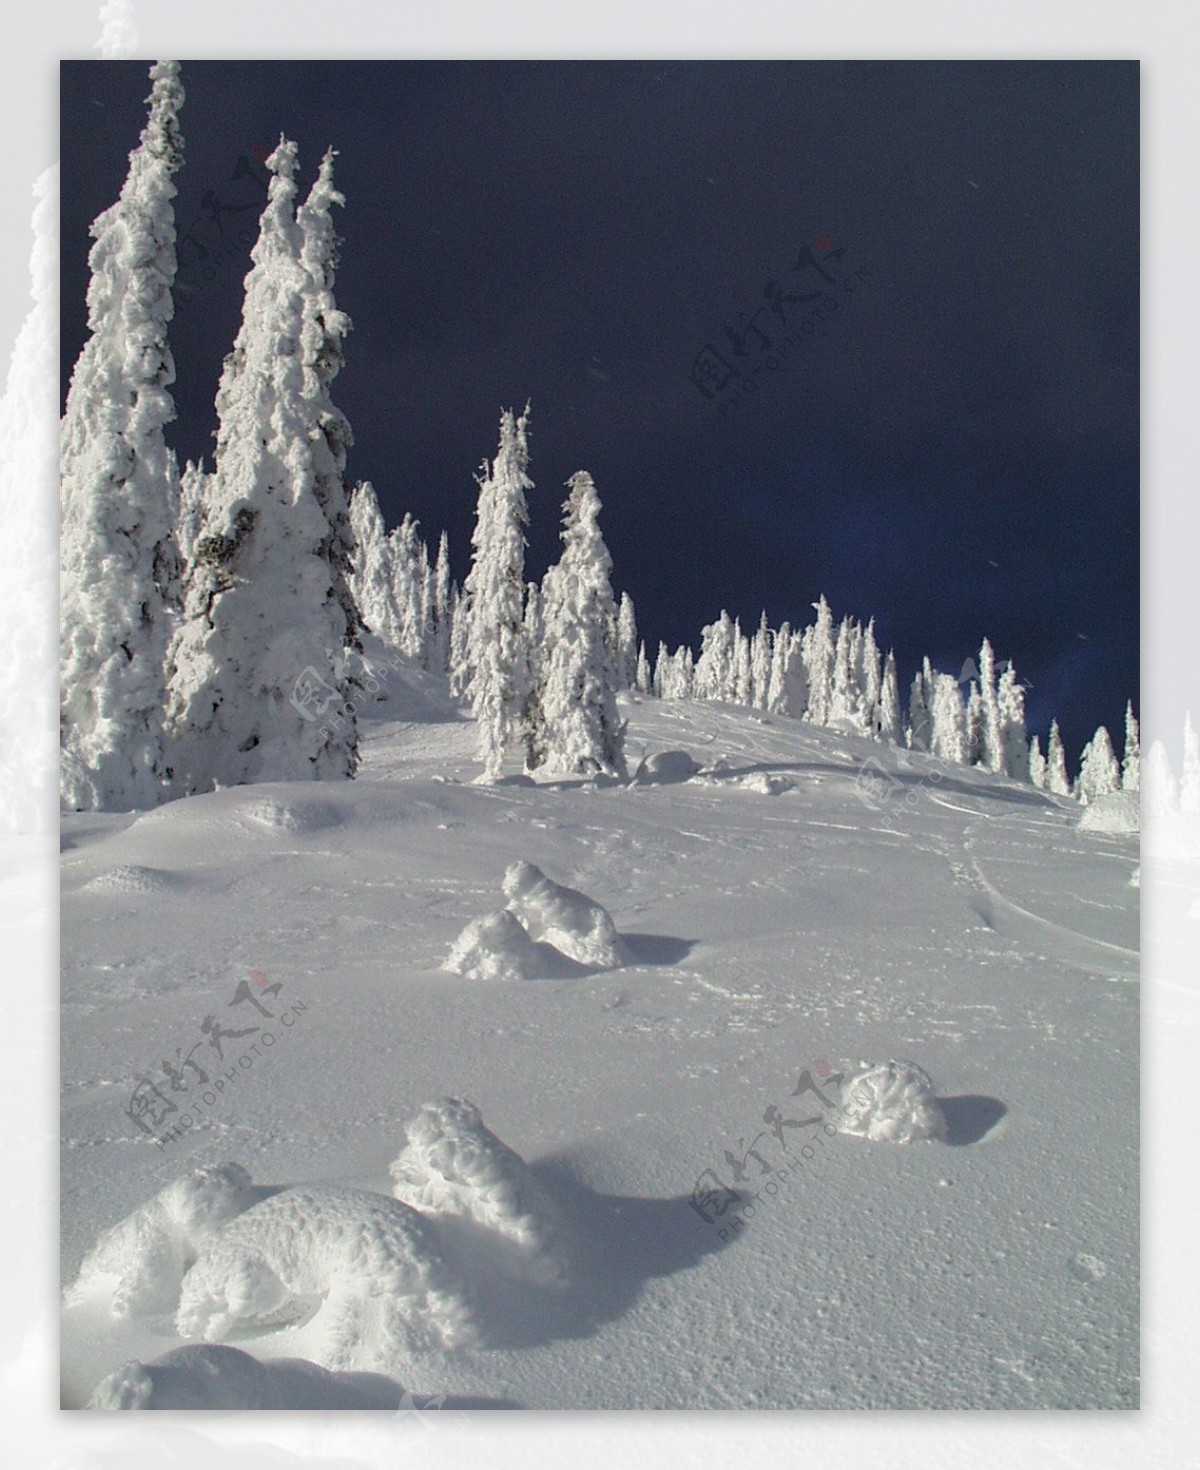 冰雪世界自然风景贴图素材JPG0303